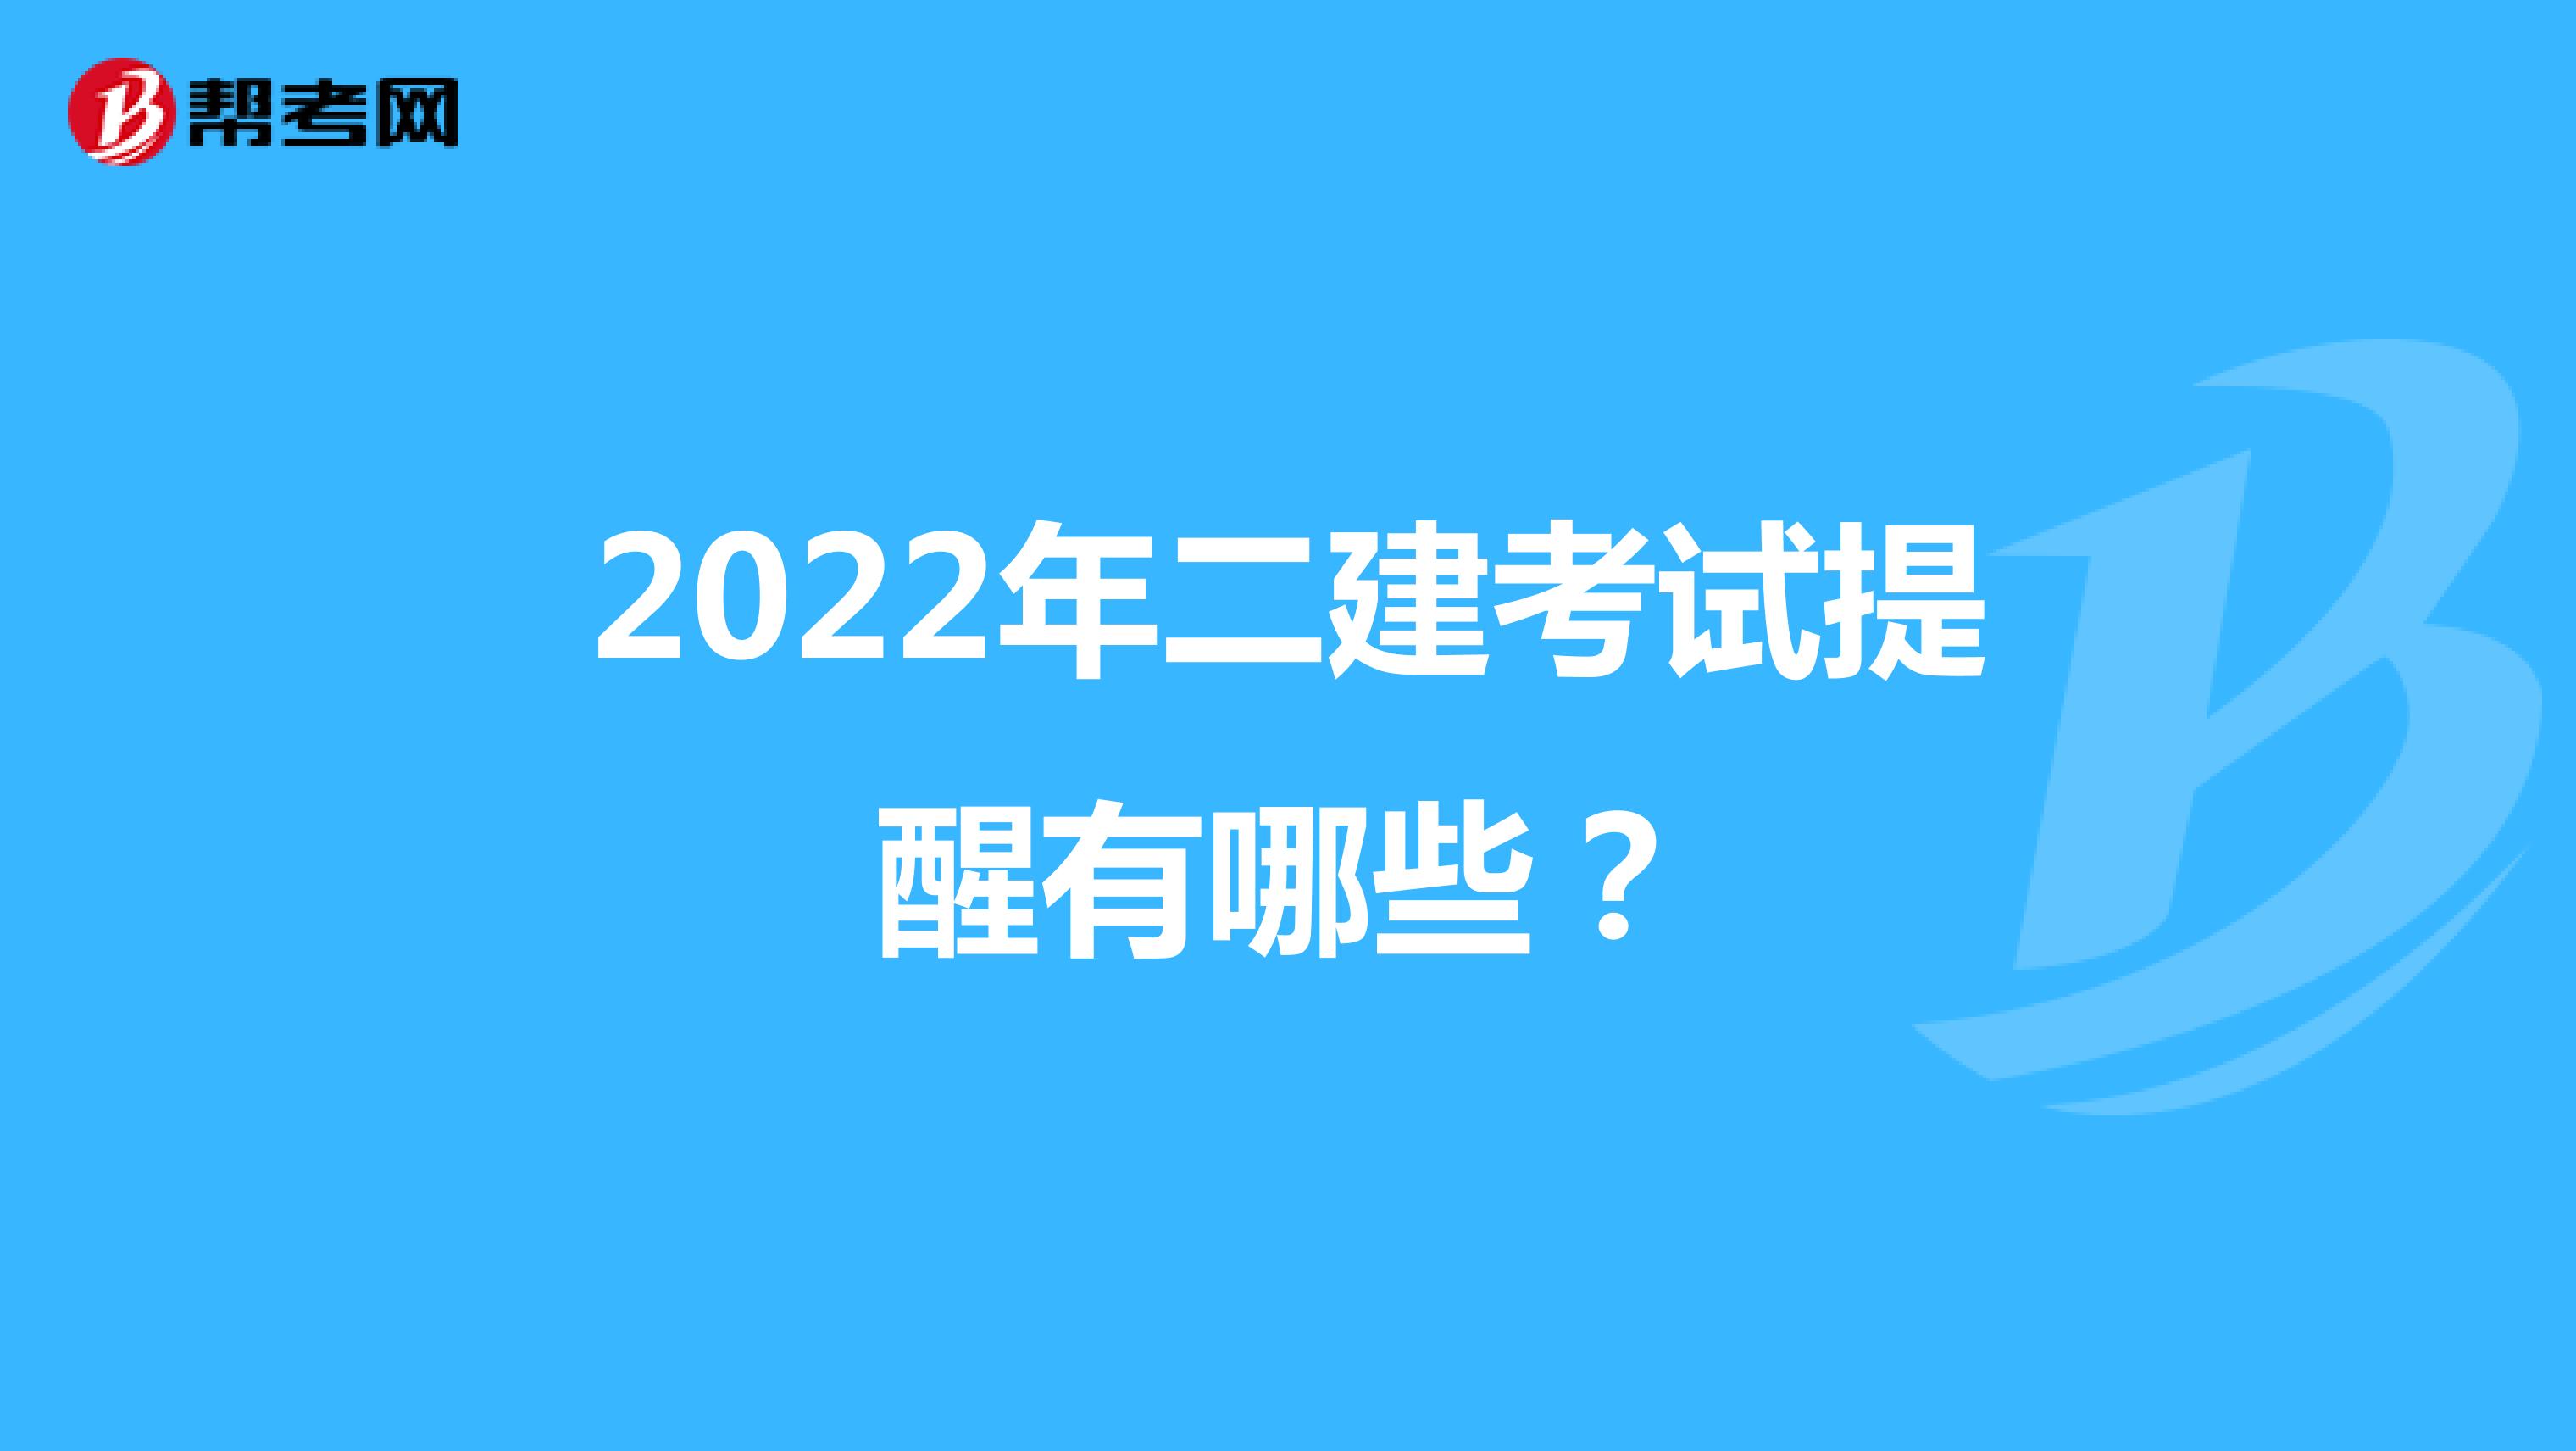 2022年二建考试提醒有哪些？